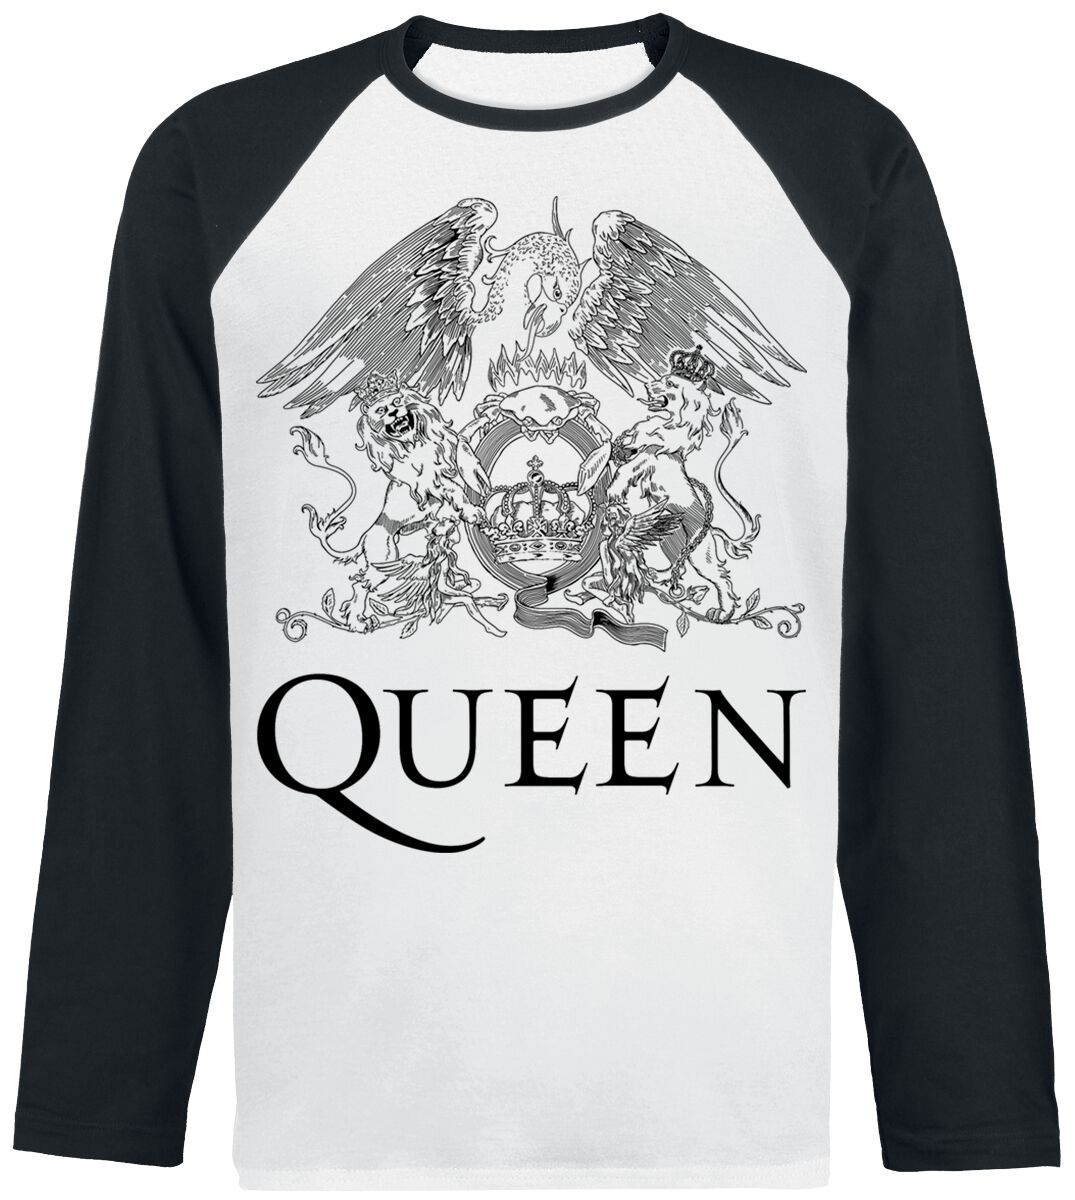 Queen Crest Vintage Langarmshirt weiß schwarz in L